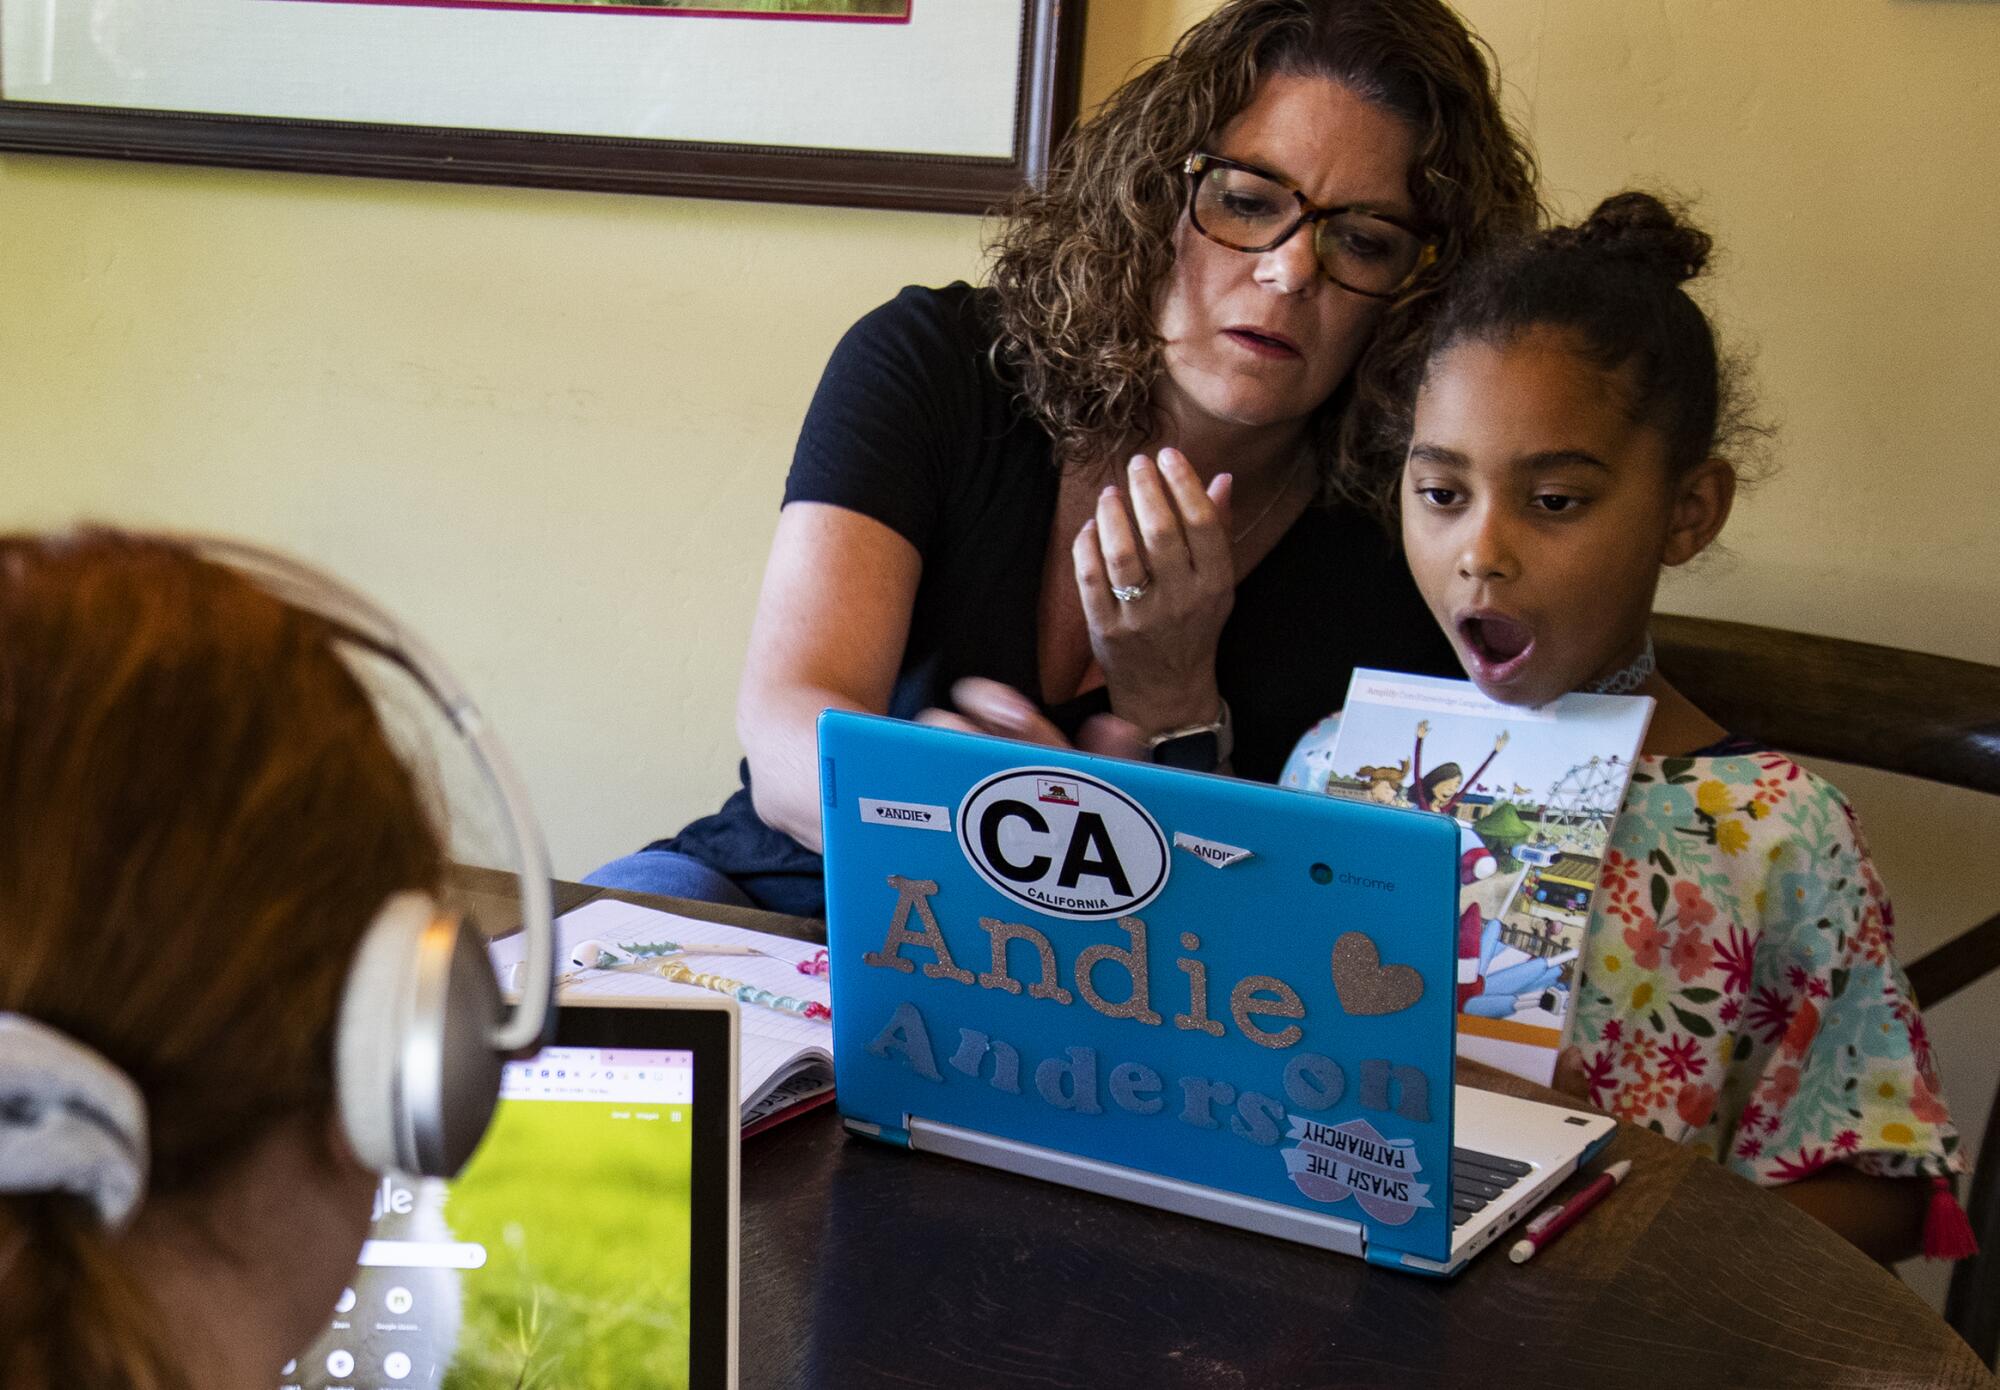 Former third-grade teacher Kristen Bristow helps her daughter Andie, 6, with homework.